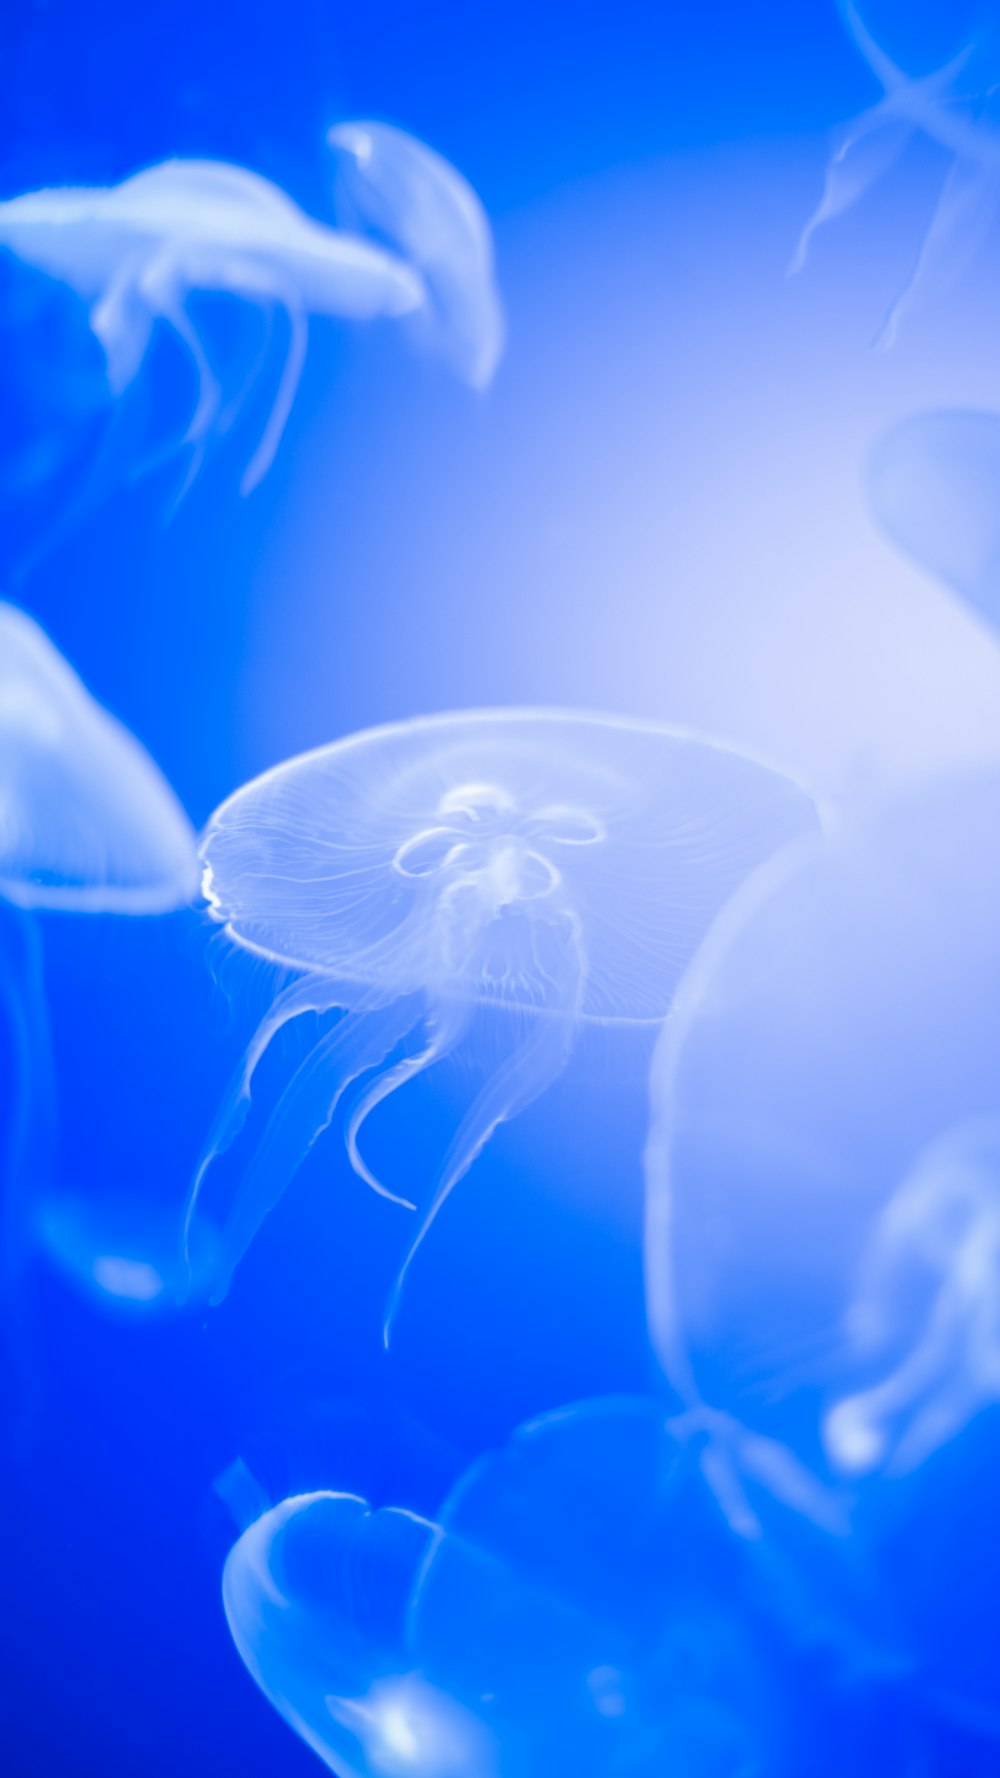 Un grupo de medusas nadando en el agua